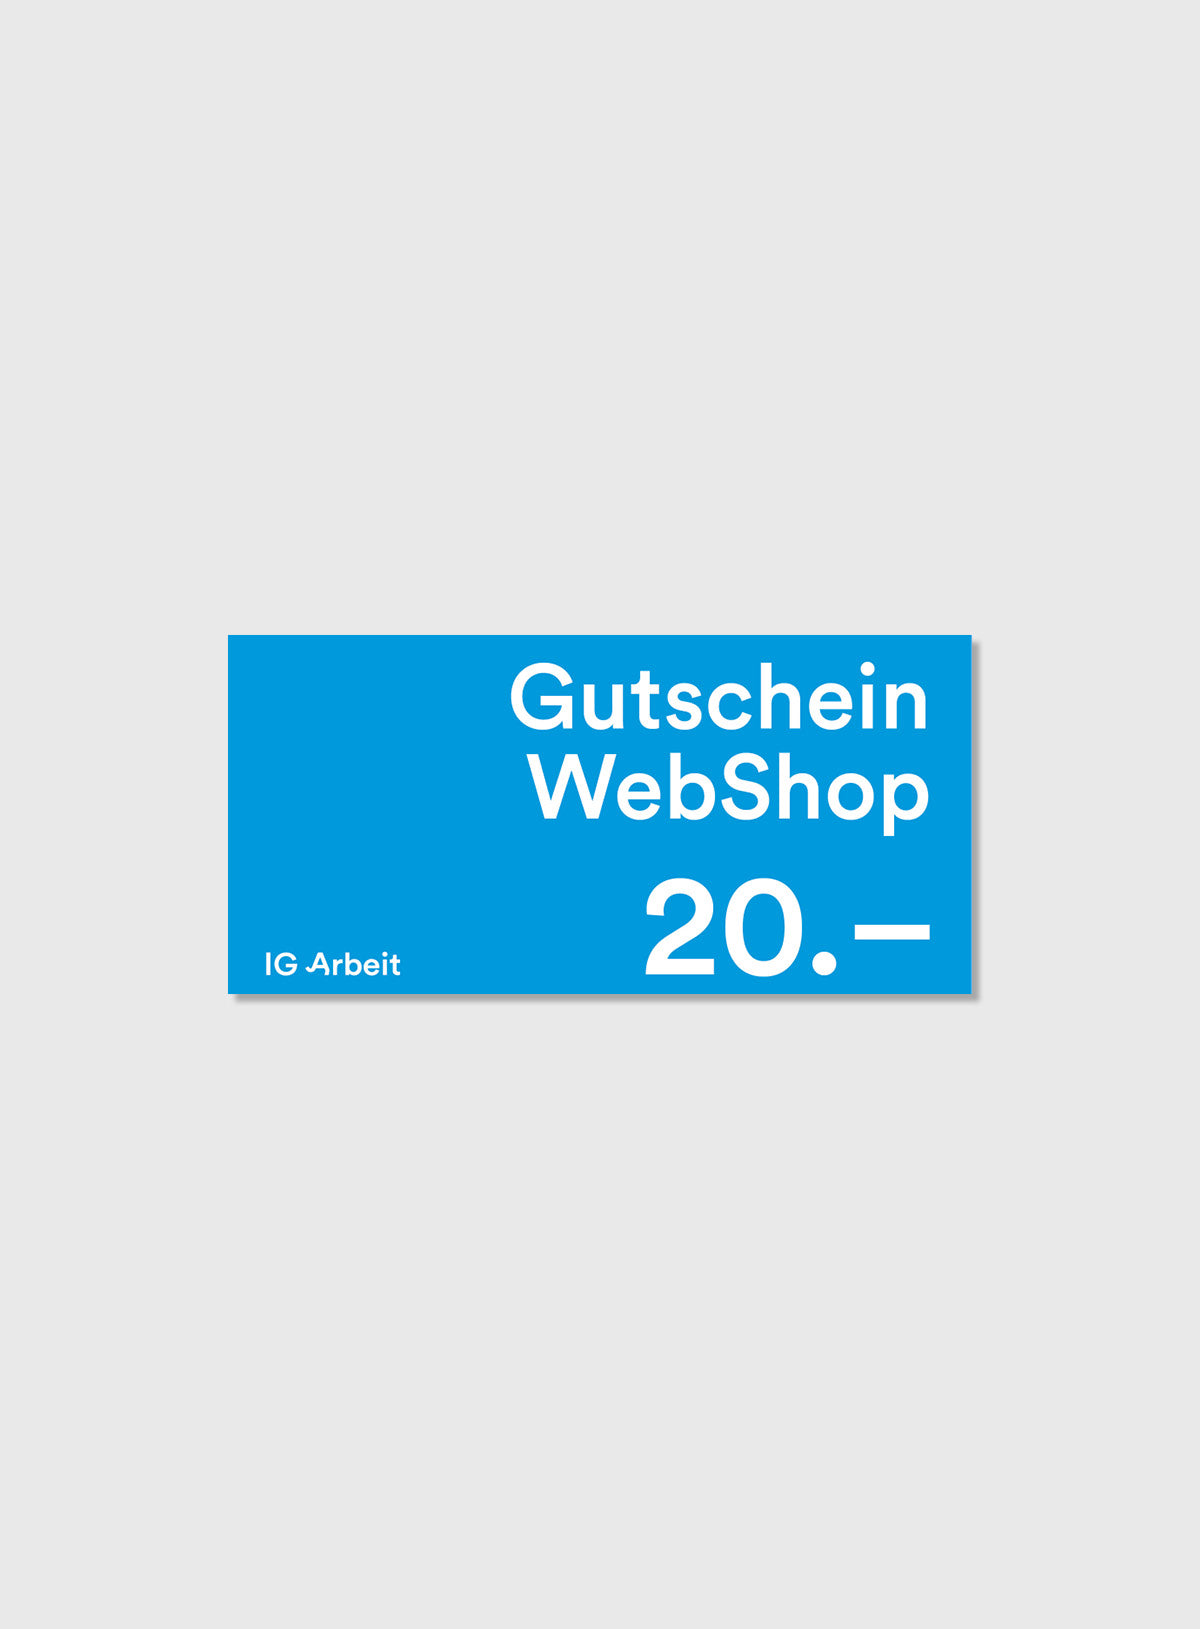 IG Arbeit WebShop Gutschein